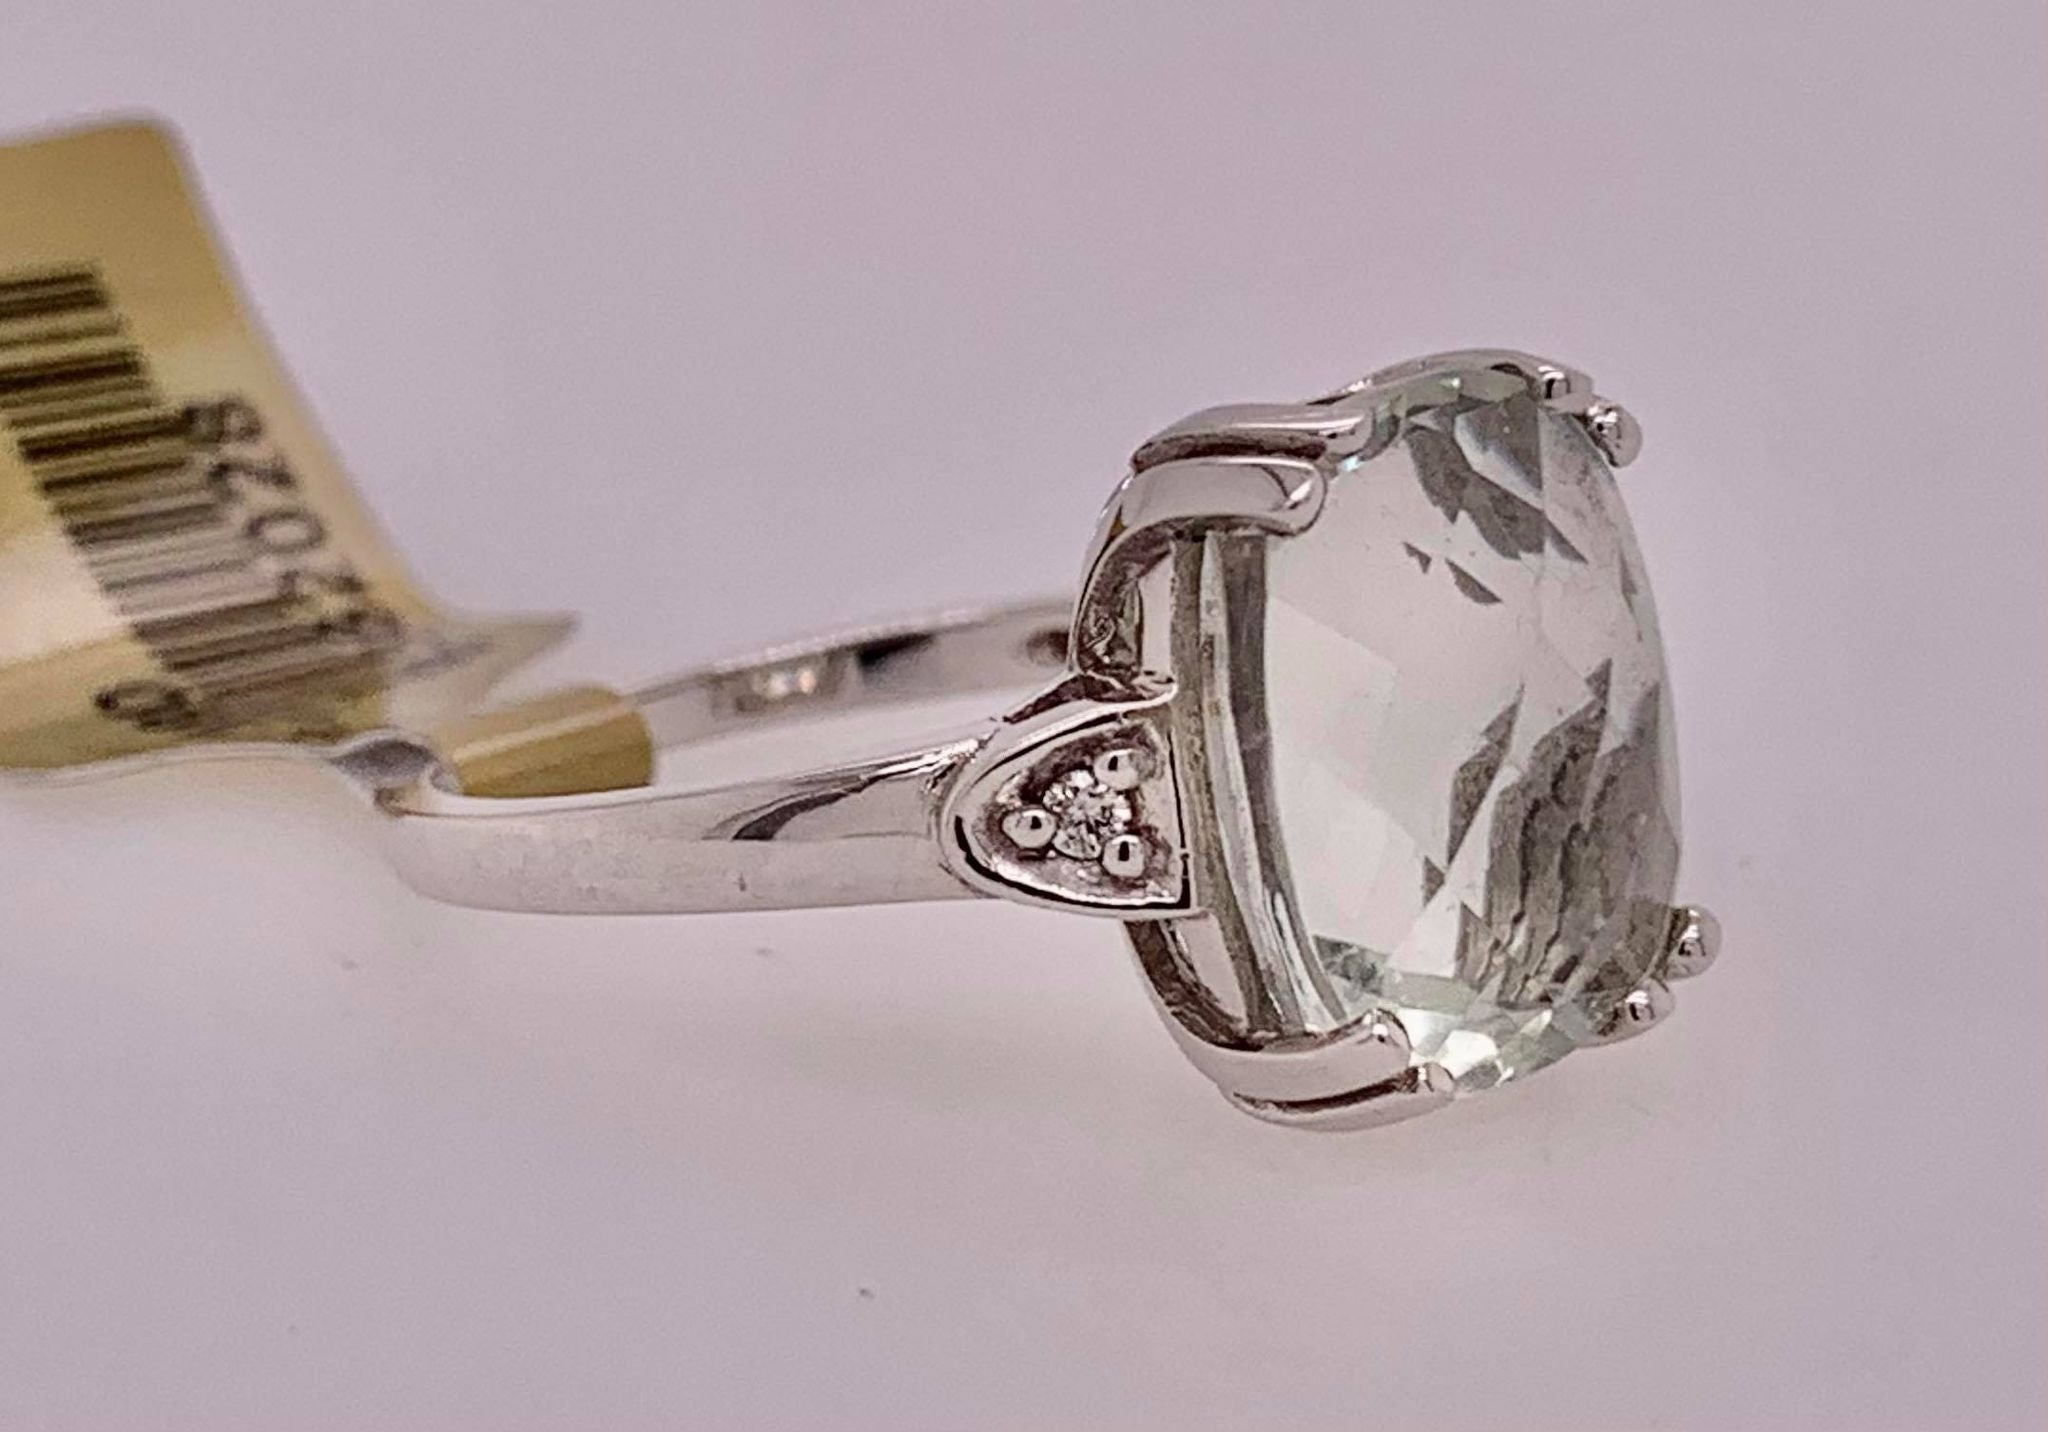 10K Green Amethyst & Diamond Ring